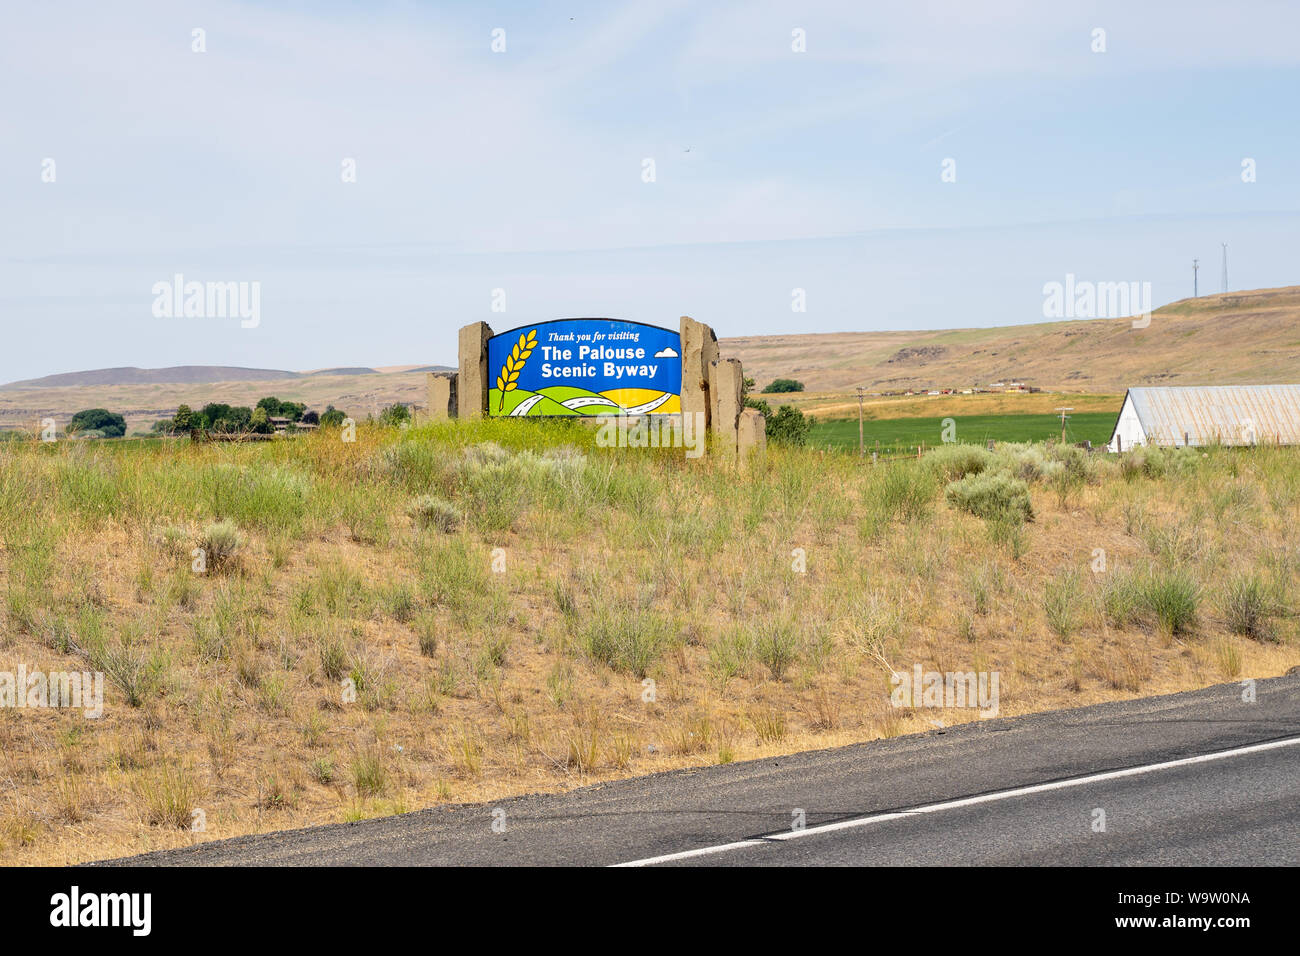 Colfax, Washington - Juli 4, 2019: Zeichen für die Palouse Scenic Byway, einem beliebten Scenic route in Osteuropa Washington State Stockfoto